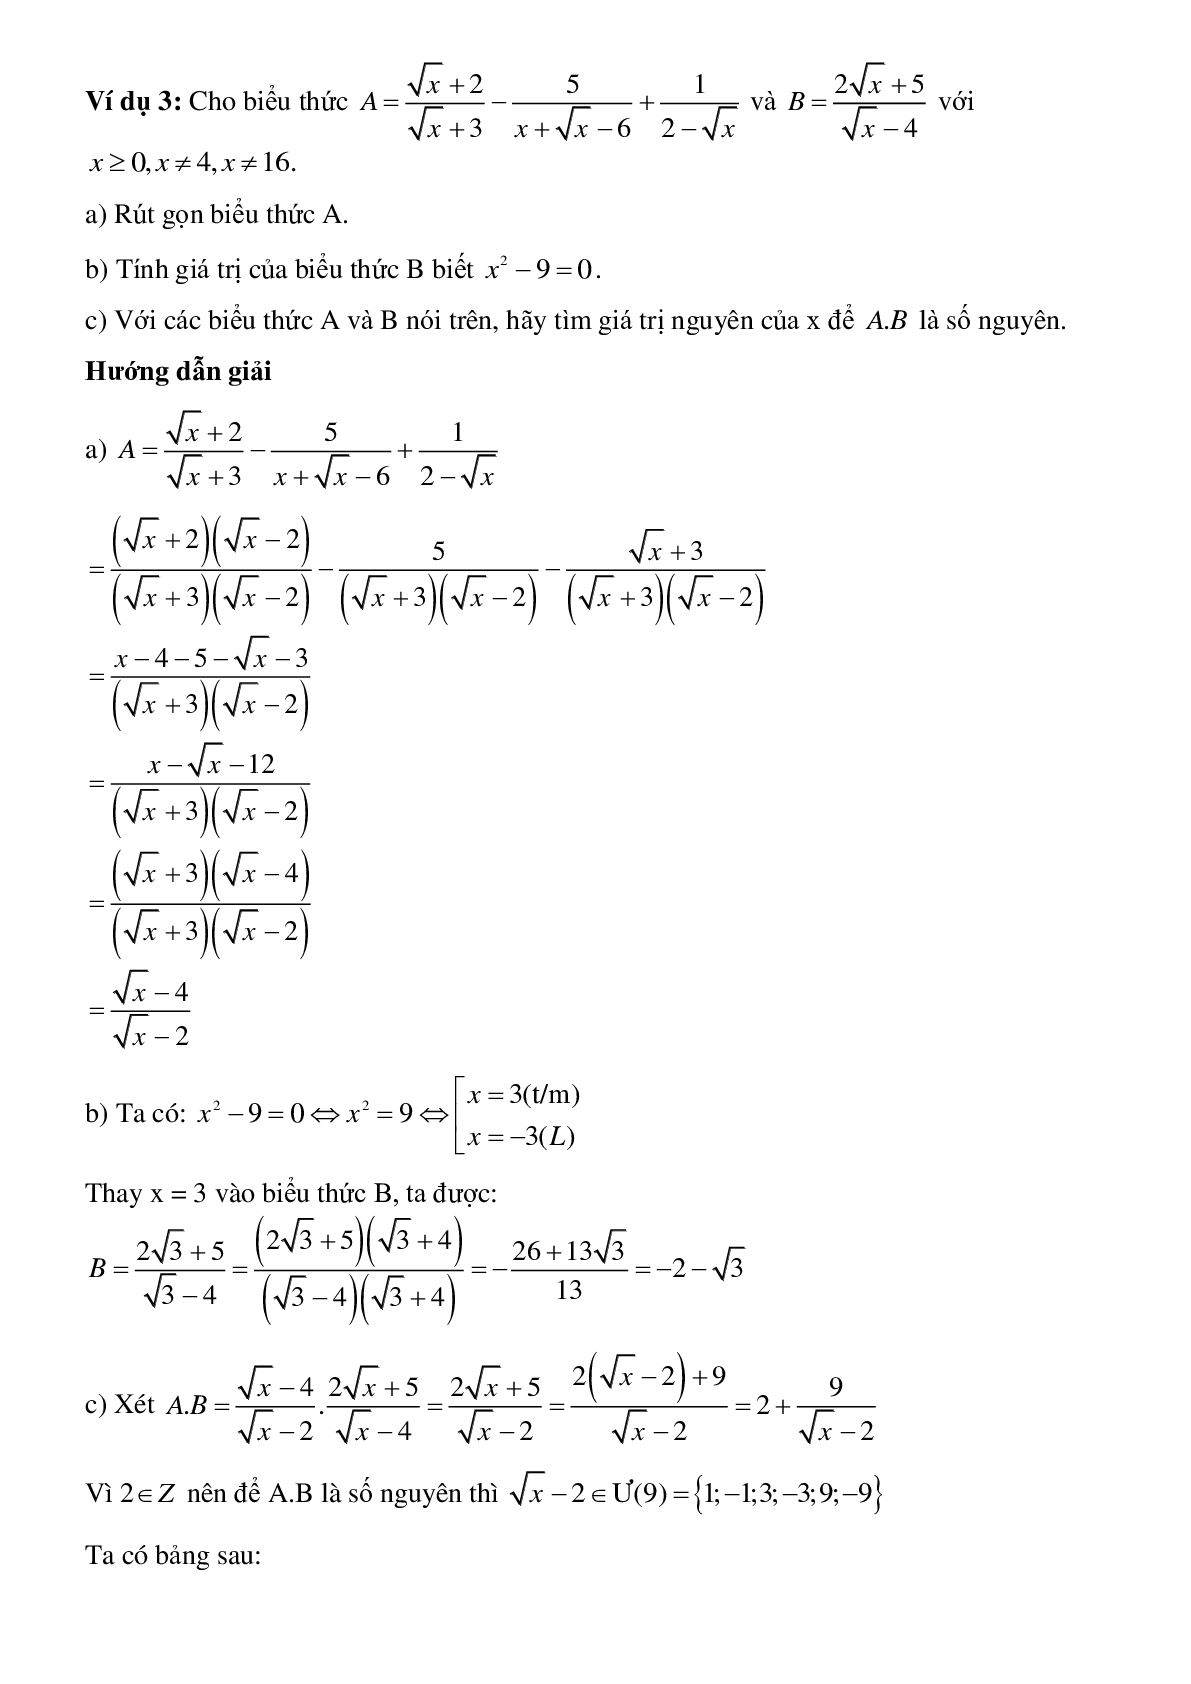 Phương pháp giải tìm x để biểu thức đạt giá trị nguyên chọn lọc (trang 4)